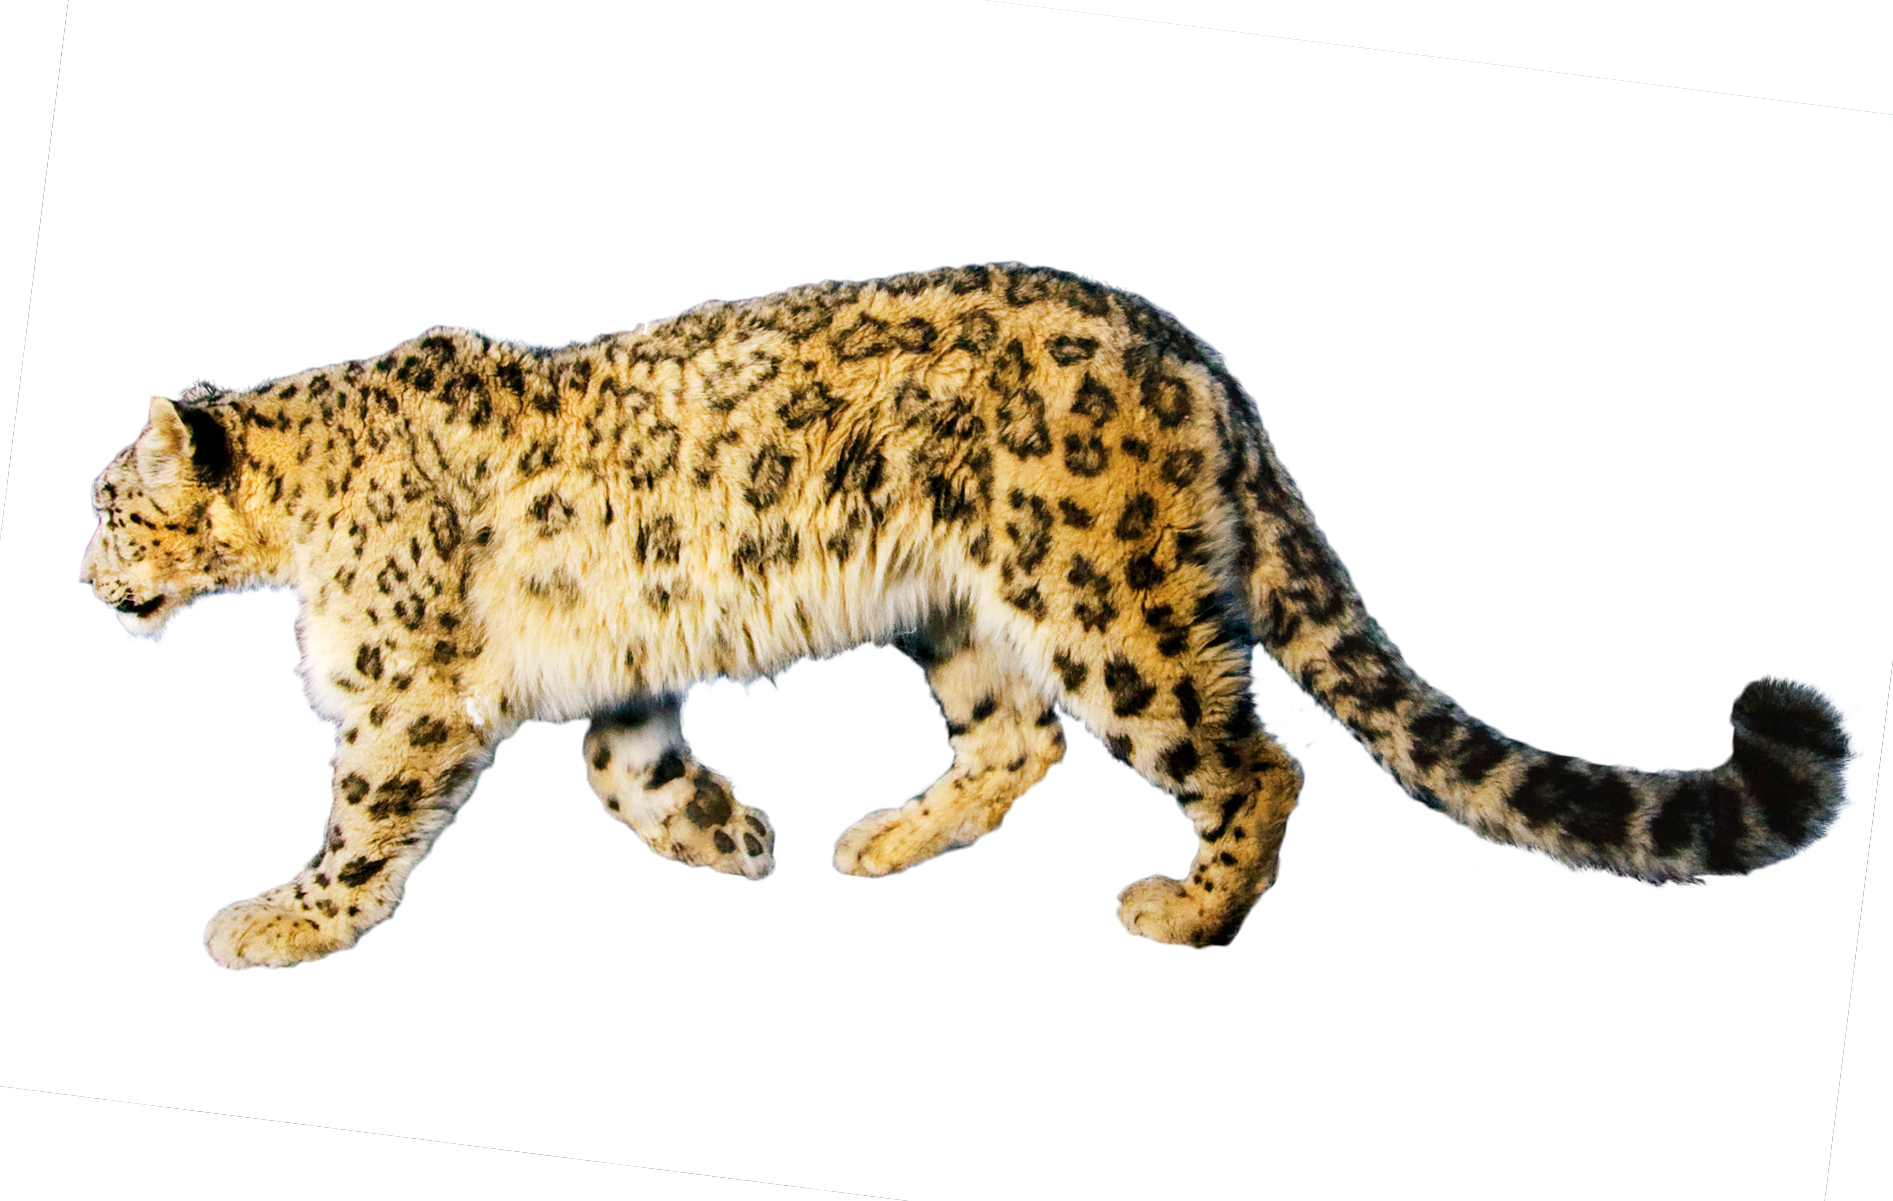 jaguar clipart branch